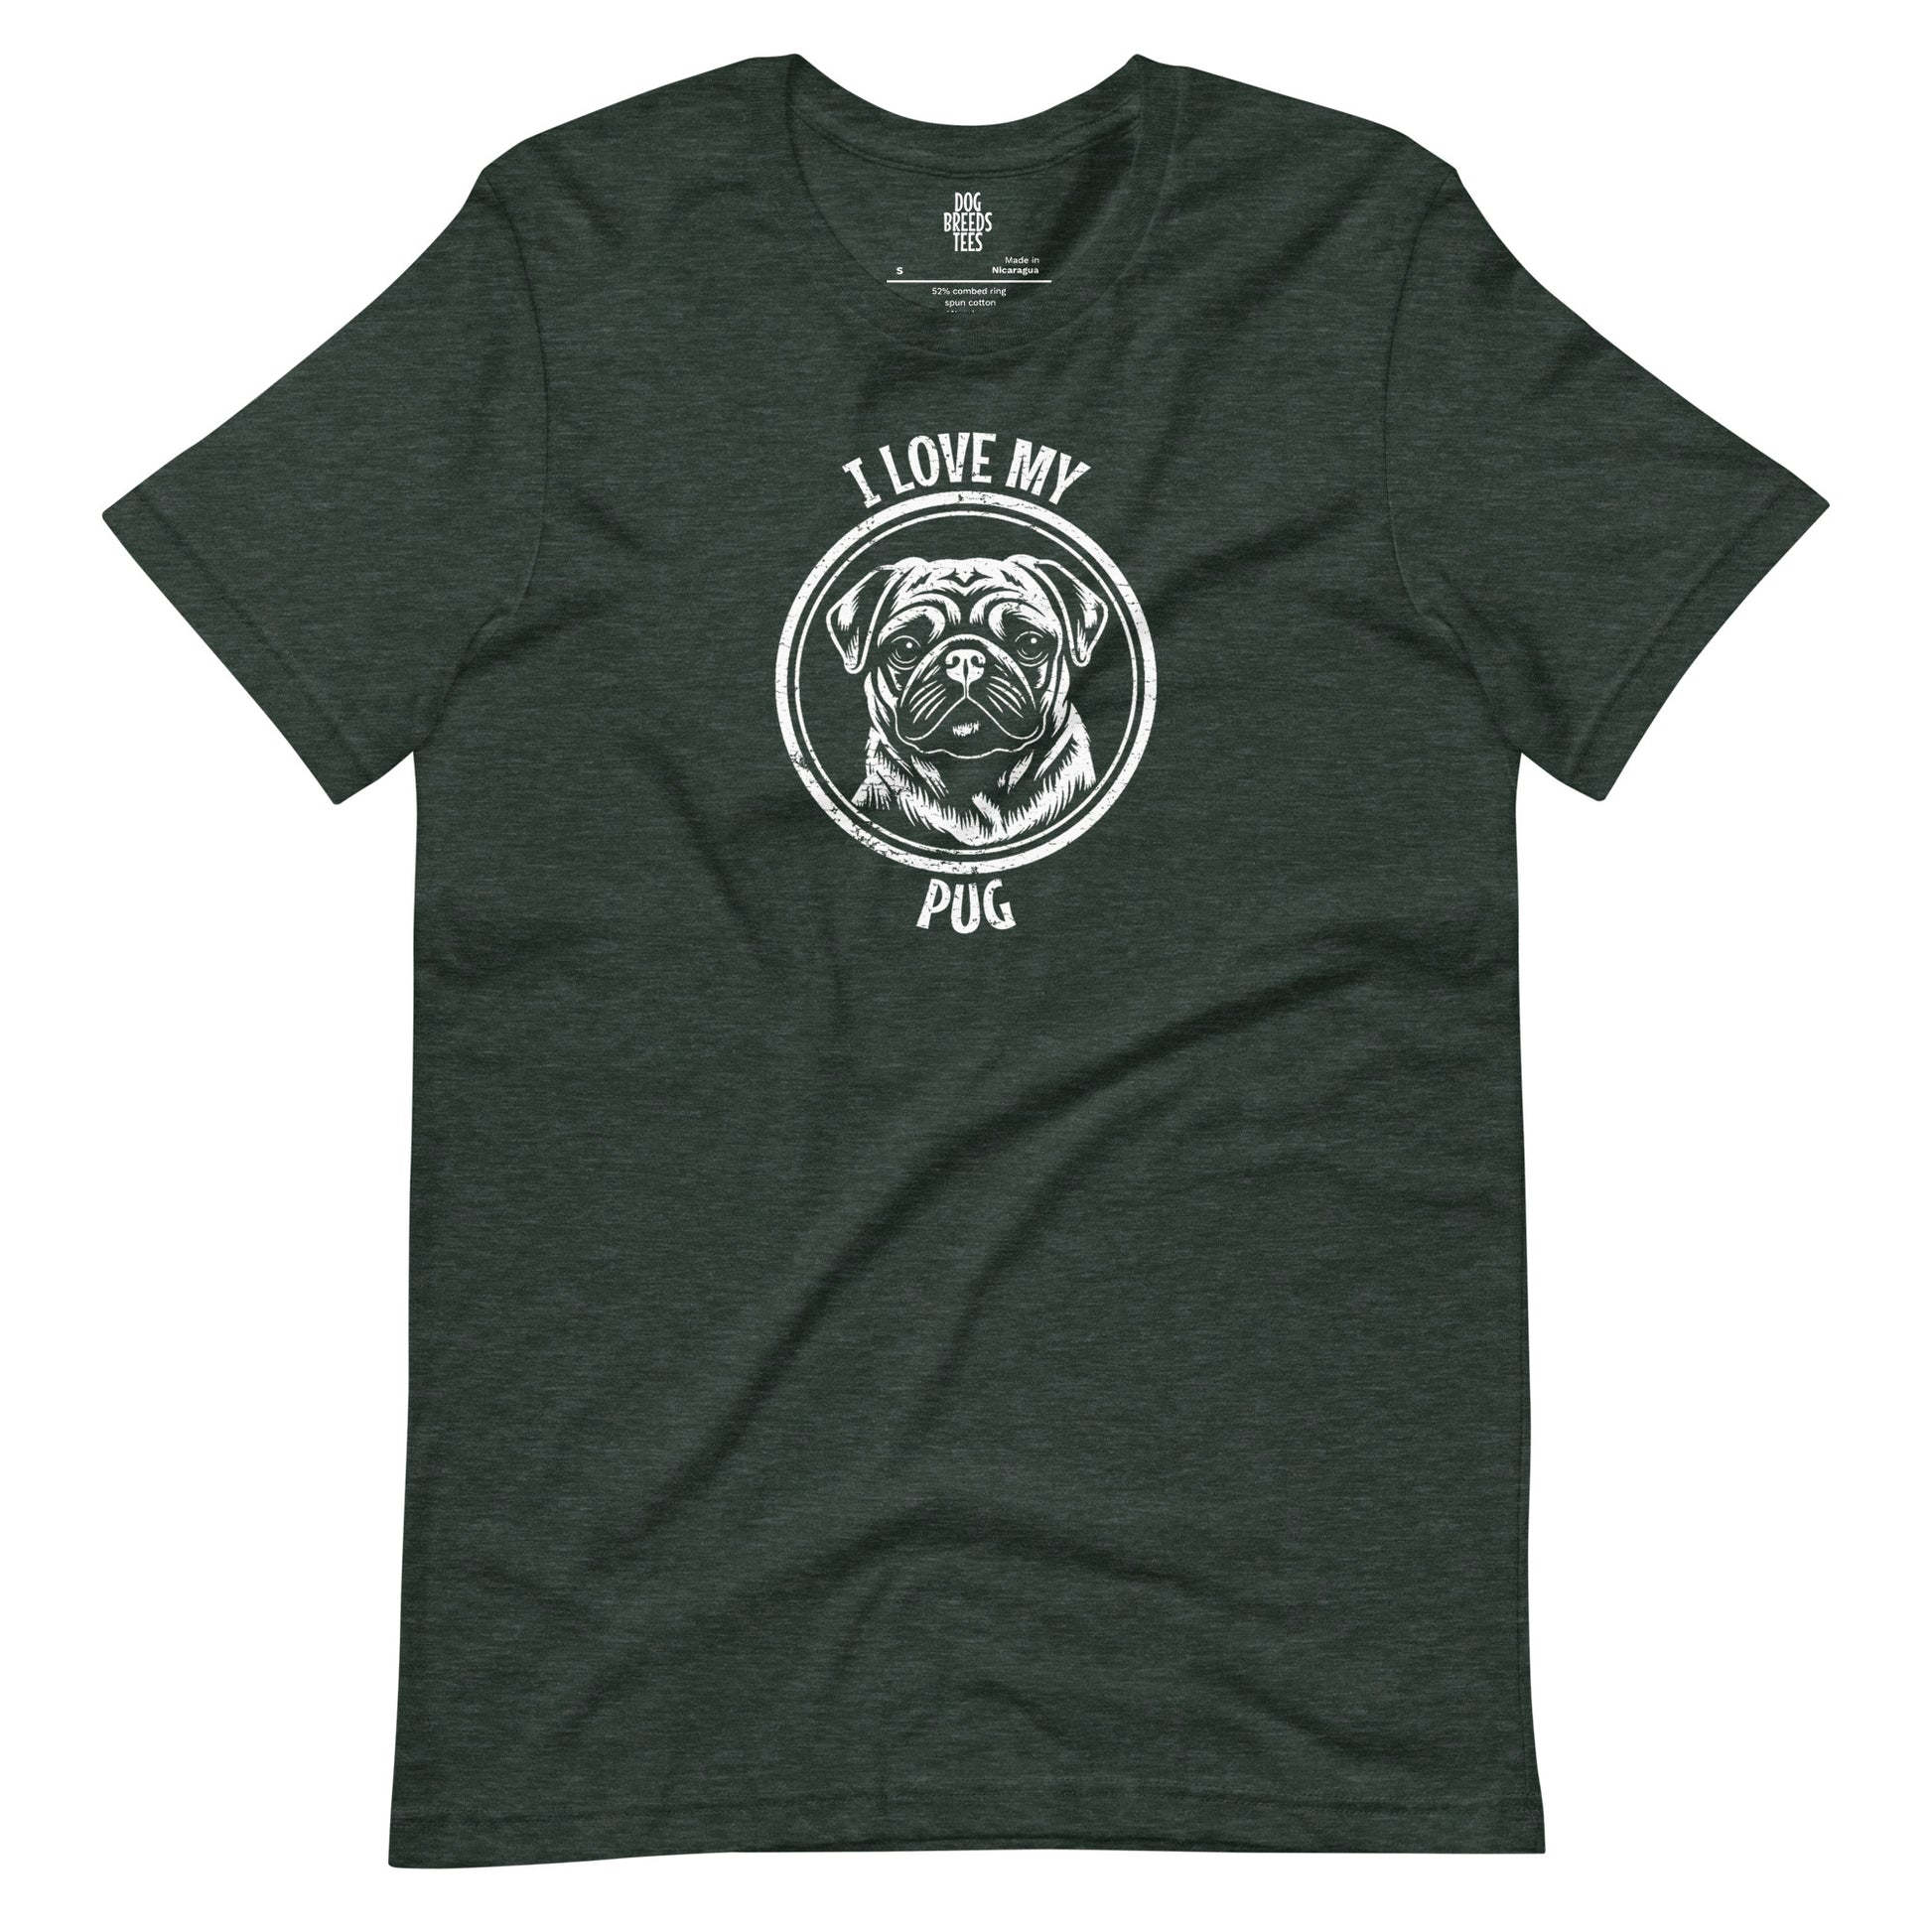 Pug Shirt, Pug gift, gift for dog mom, custom dog gift, dog owner gift, pet memorial gift